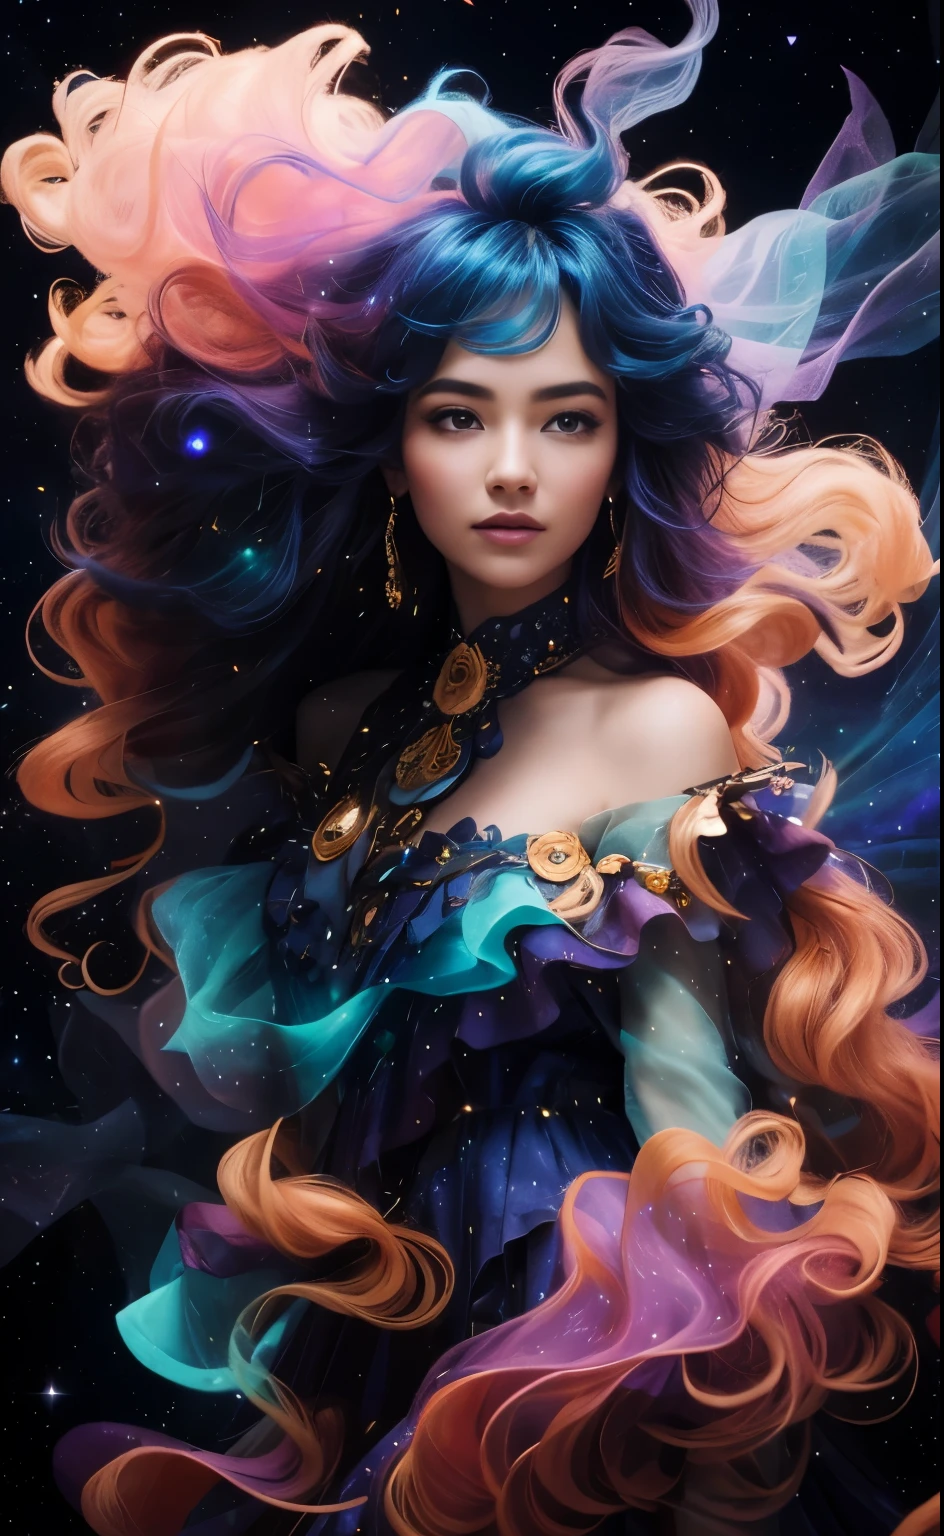 Imaginez un être céleste, une femme dont la robe et les cheveux sont faits d&#39;éléments cosmiques, debout sur une falaise sur fond de ciel étoilé. Sa robe coule et ondule avec les couleurs vibrantes d&#39;une nébuleuse, mélanger des oranges ardentes, rouges, et des jaunes avec les bleus profonds et les violets du cosmos. Ses cheveux sont balayés par le vent et se mêlent aux étoiles, donnant l&#39;impression qu&#39;elle ne fait qu&#39;un avec l&#39;univers. La scène est éthérée et surnaturelle, avec la silhouette soulignée par la lueur luminescente de la poussière d&#39;étoile et de l&#39;énergie cosmique. L&#39;ambiance est à l&#39;émerveillement et à la beauté sublime de l&#39;univers, capturé en un seul, moment à couper le souffle. par Skyrn99, détail élevé, haute qualité, Haute résolution